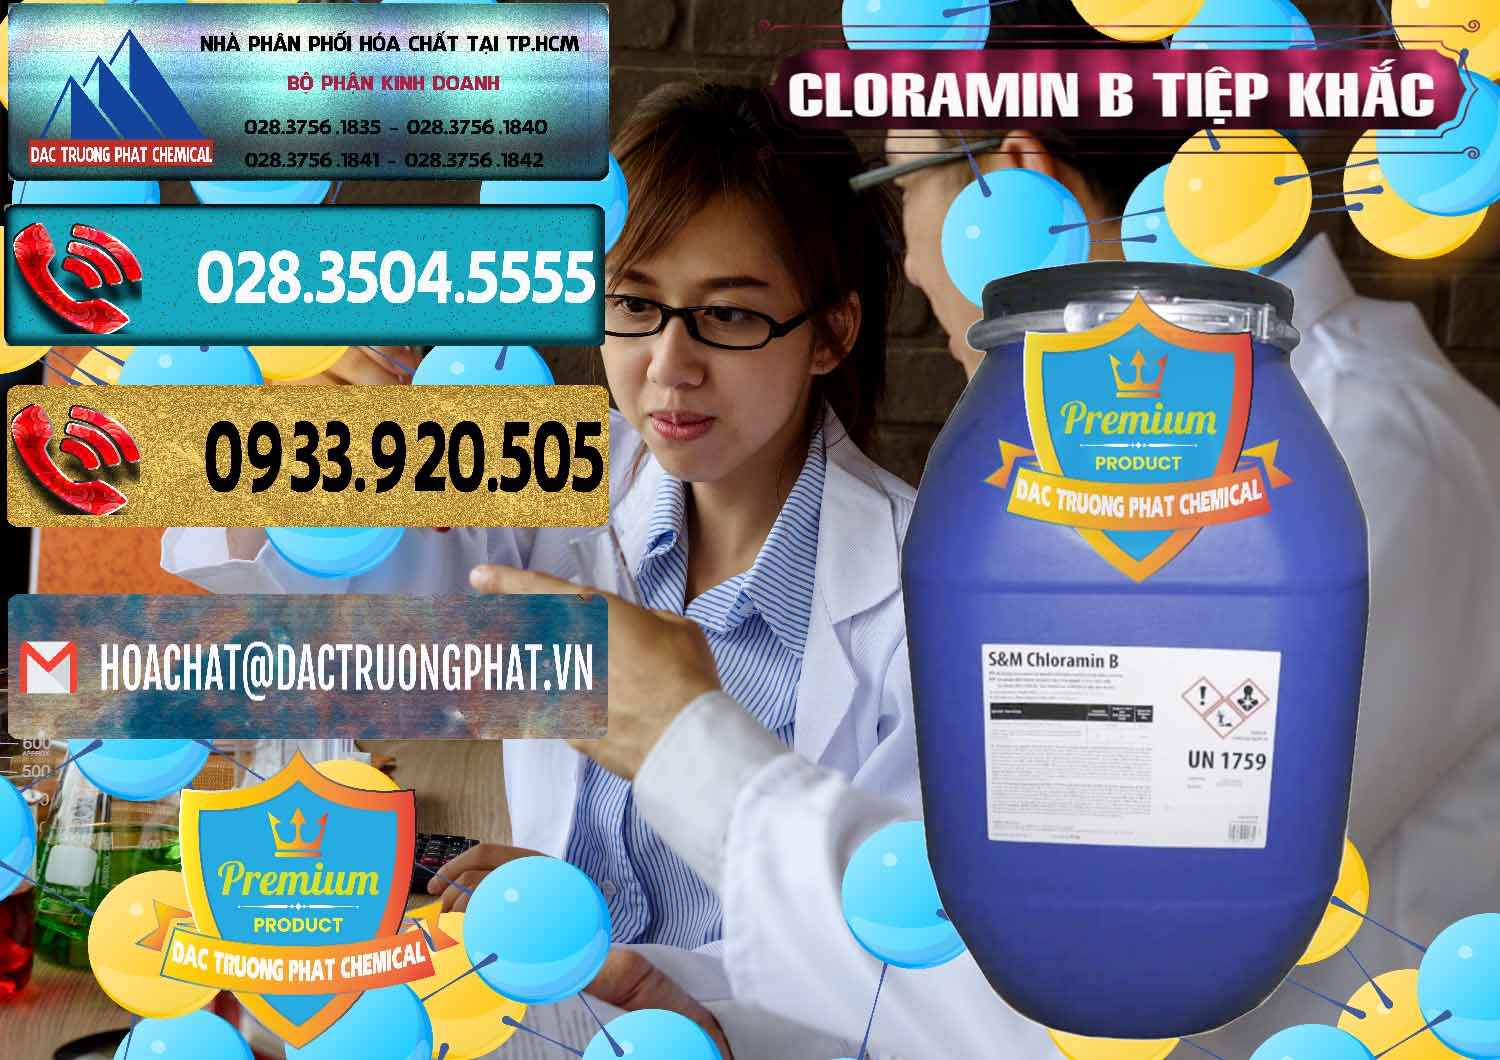 Chuyên cung ứng - bán Cloramin B Cộng Hòa Séc Tiệp Khắc Czech Republic - 0299 - Công ty chuyên nhập khẩu và cung cấp hóa chất tại TP.HCM - hoachatdetnhuom.com